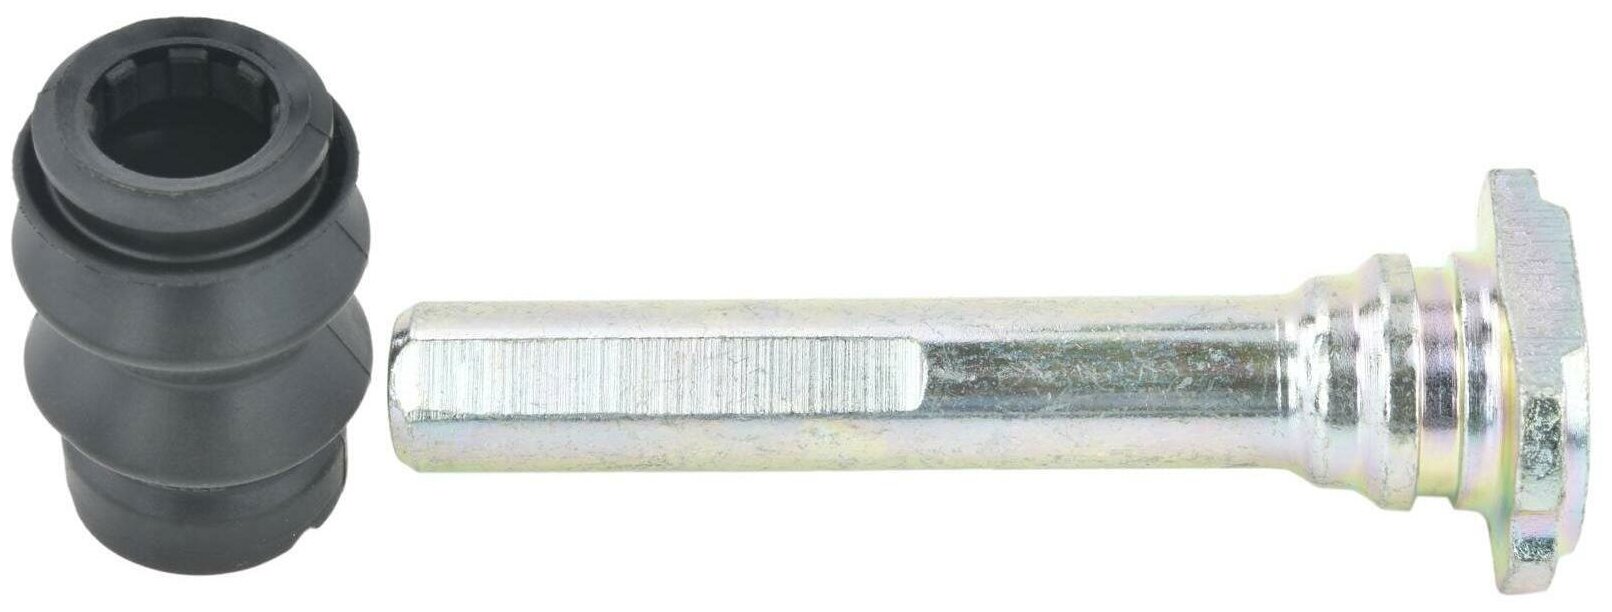 Втулка направляющая суппорта тормозного переднего FEBEST 1674-204F для автомобилей Mercedes-Benz. - Febest арт. 1674-204F